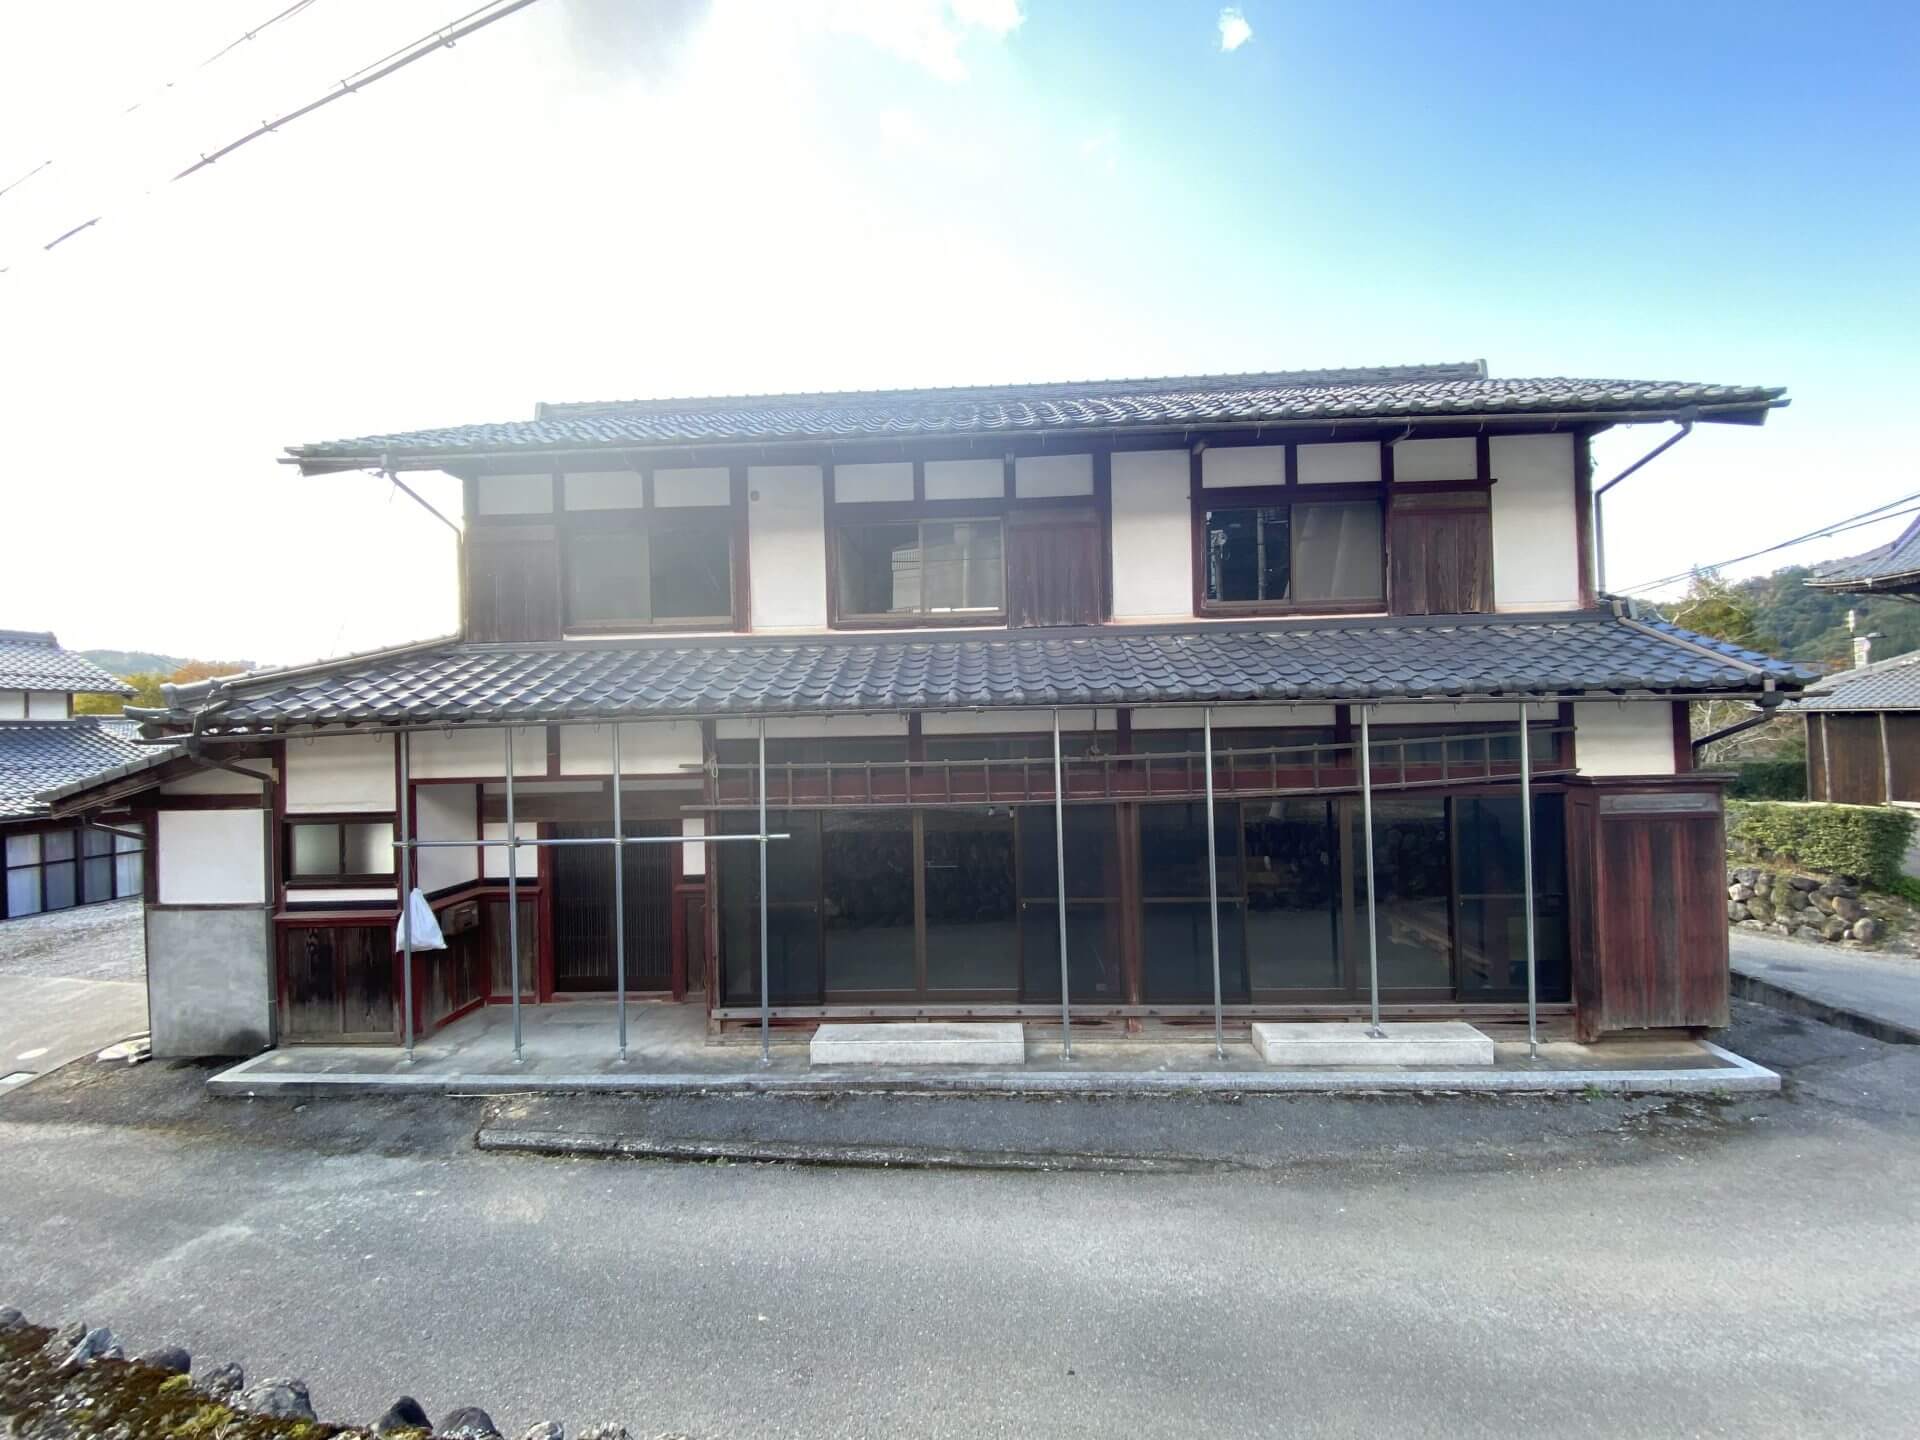 昔ながらの日本家屋　朱色の柱が印象的
前オーナー様が定期的に風通しなどしていて頂いたおかげで
状態よく譲って頂けました。